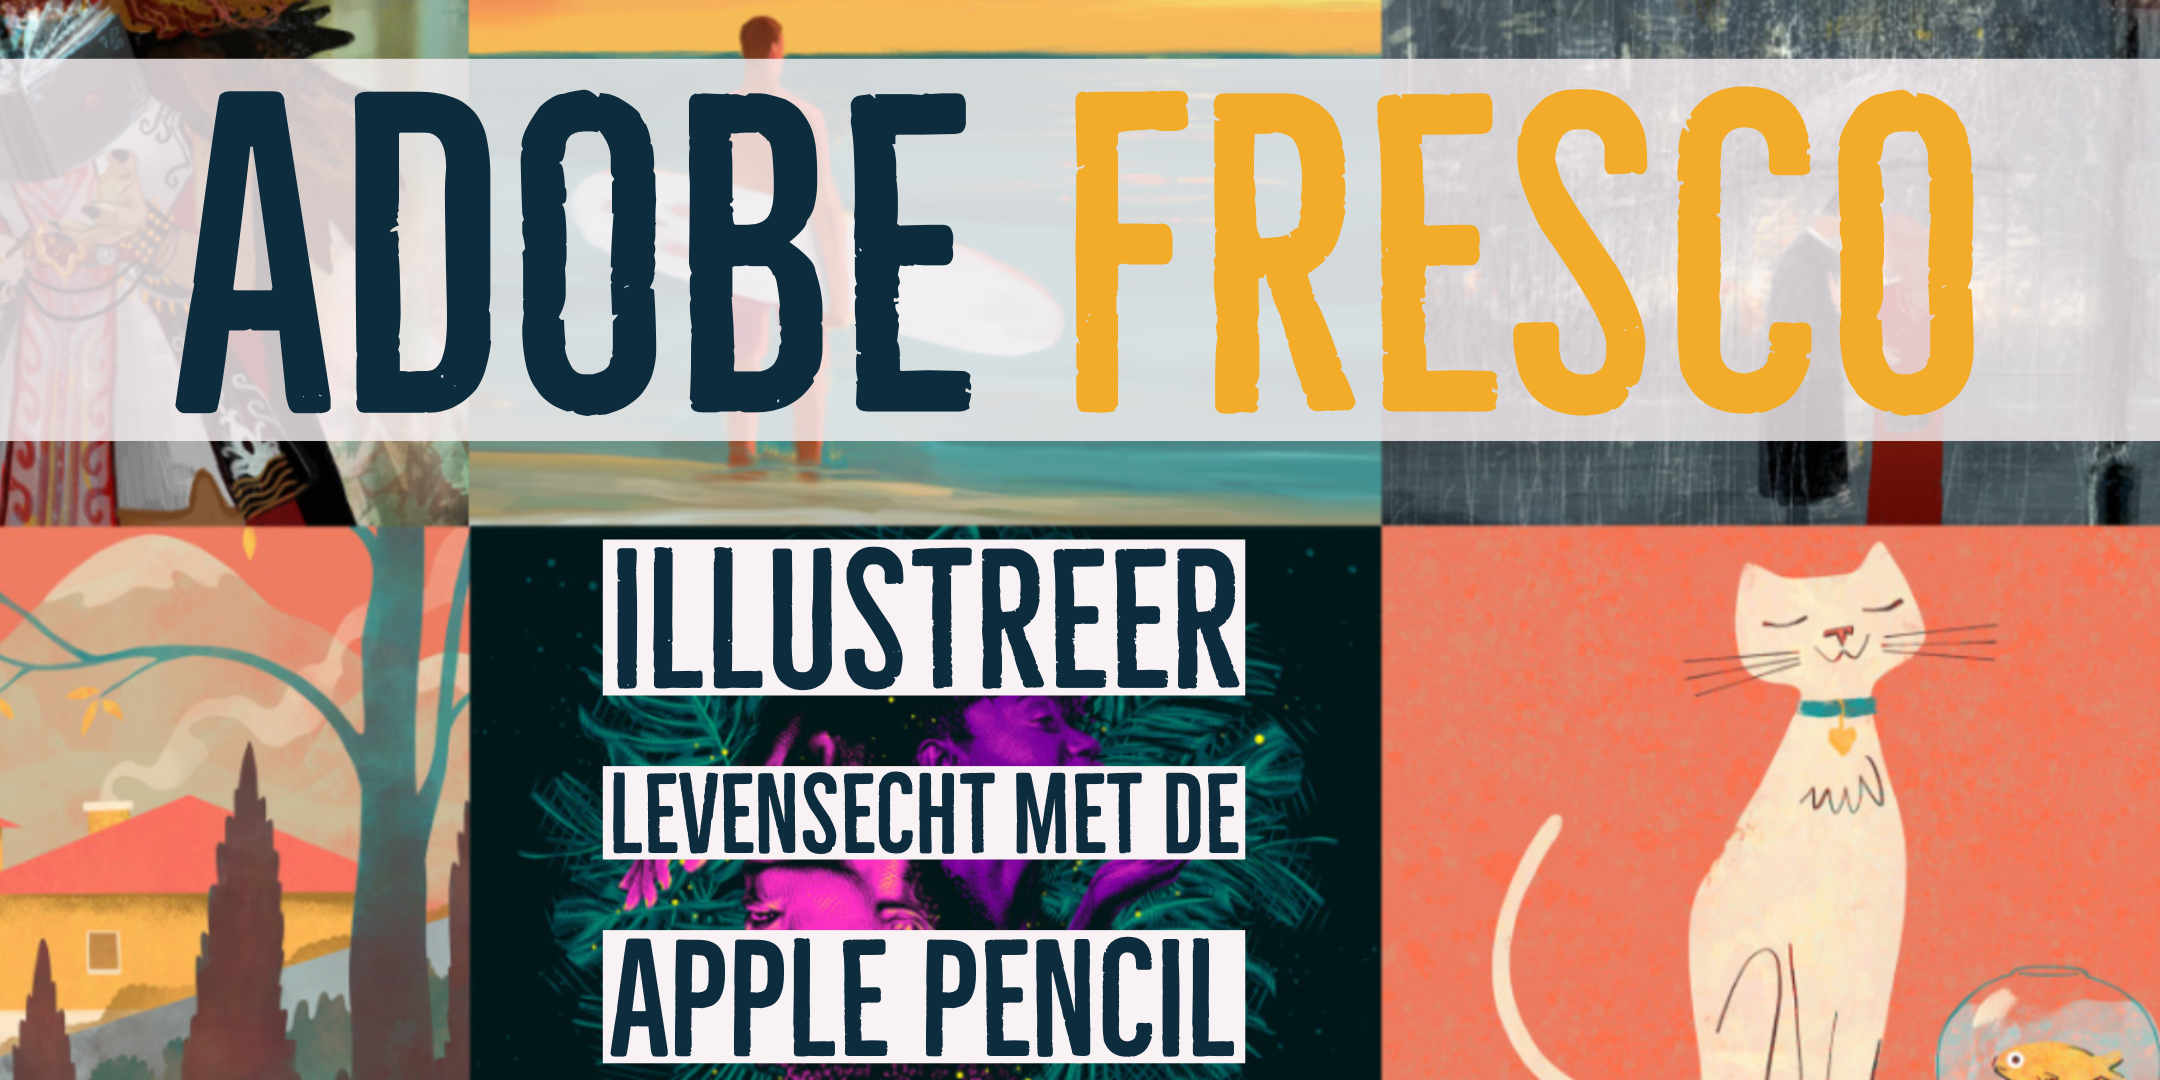 instal the new for apple Adobe Fresco 4.7.0.1278